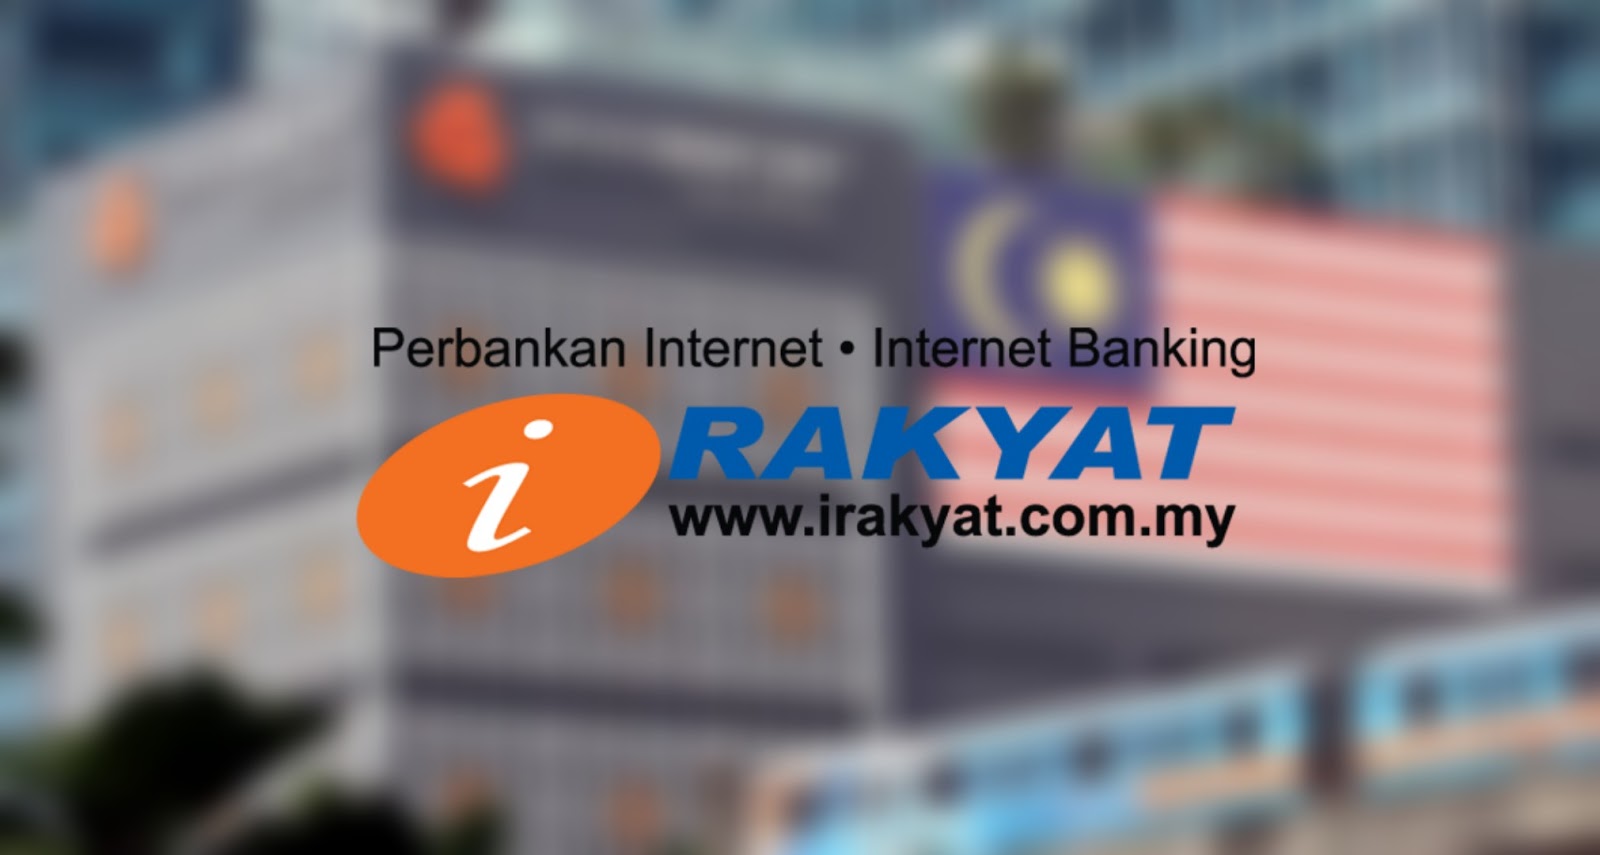 Banking bank rakyat internet ‎iRakyat Mobile